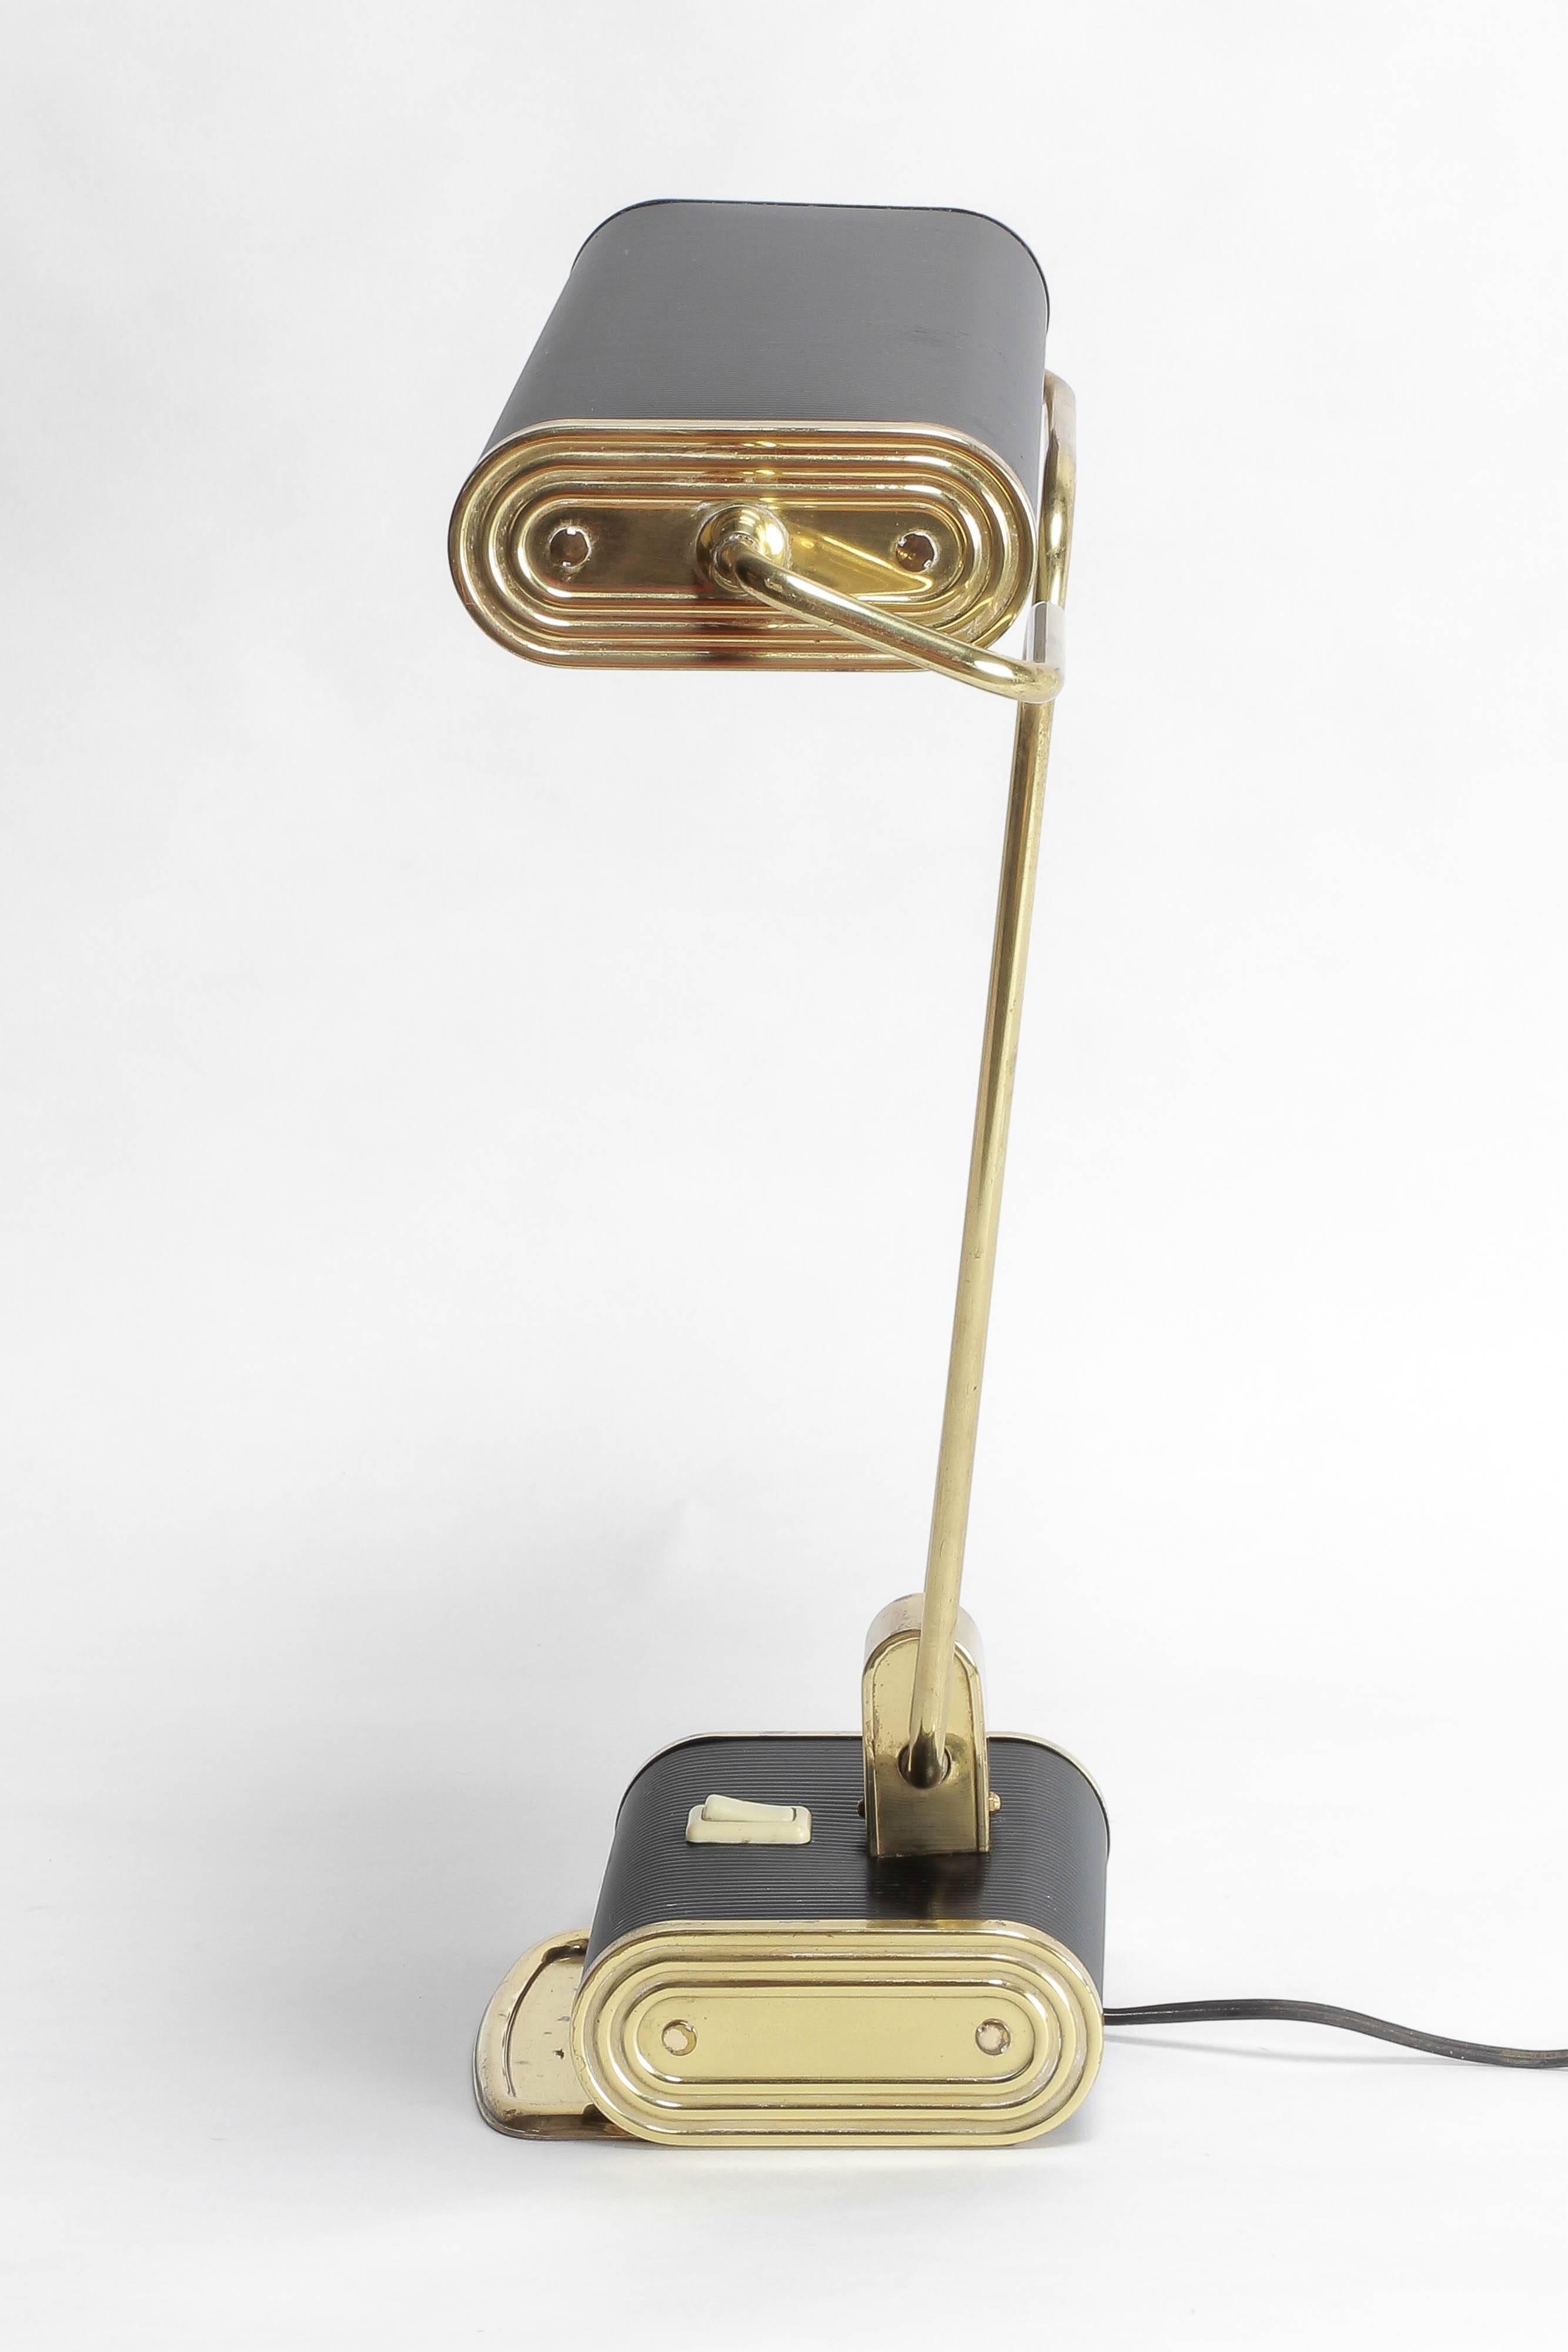 Mid-Century Modern Eileen Gray Desk Lamp for Jumo France Brass, 1940s